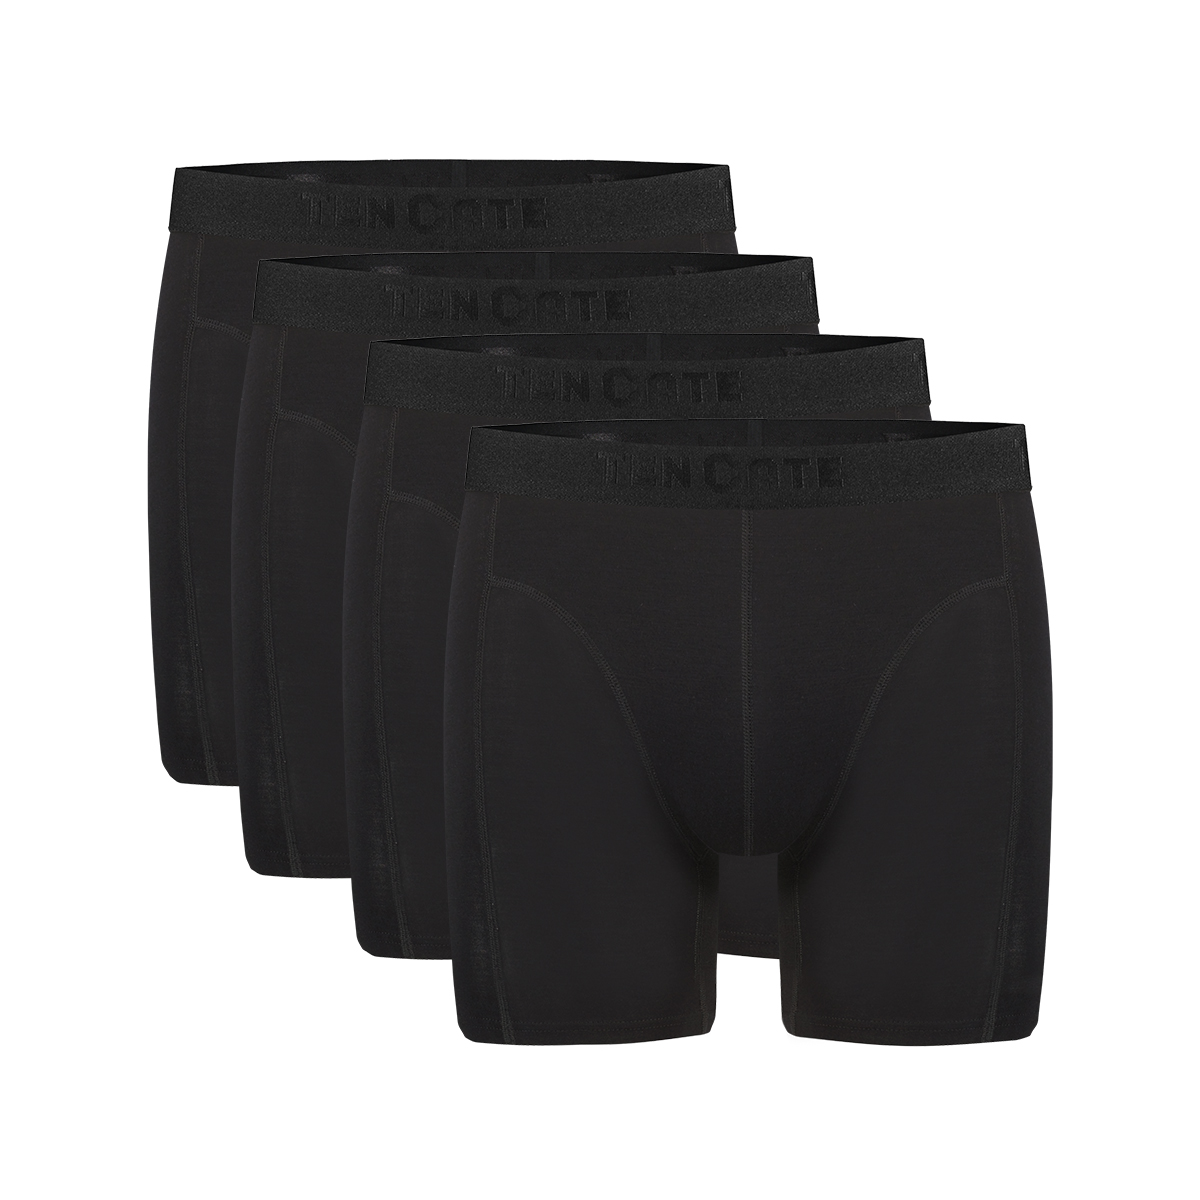 Long shorts zwart 4 pack